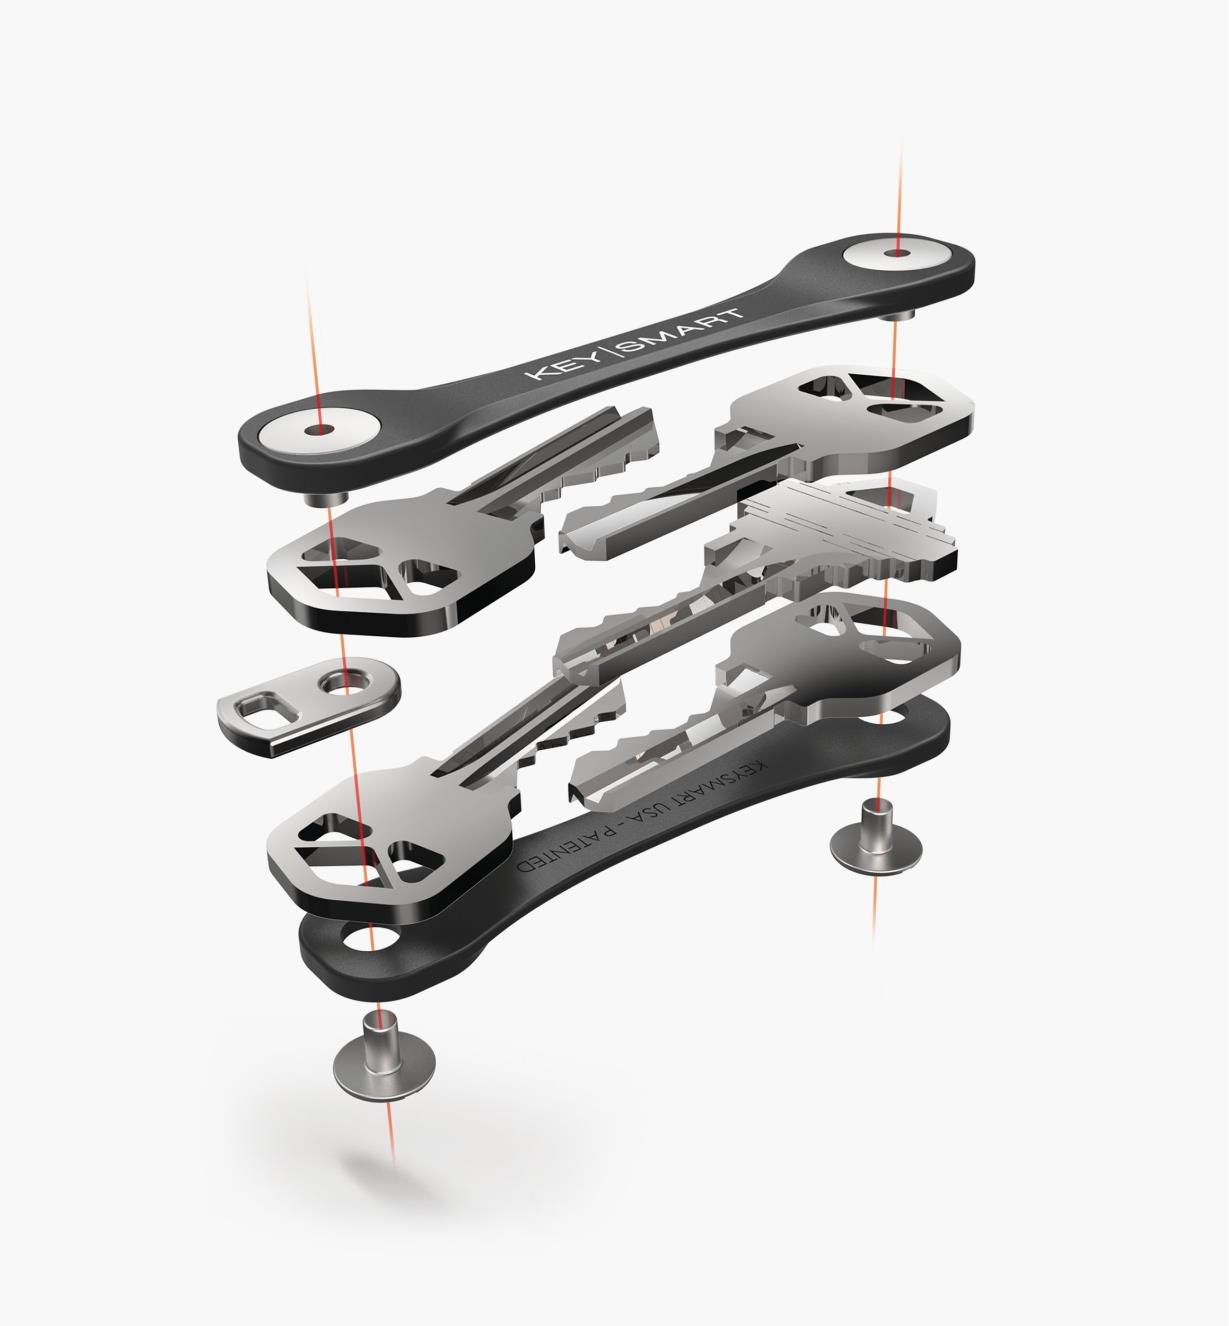 Exploded image of KeySmart holding five keys